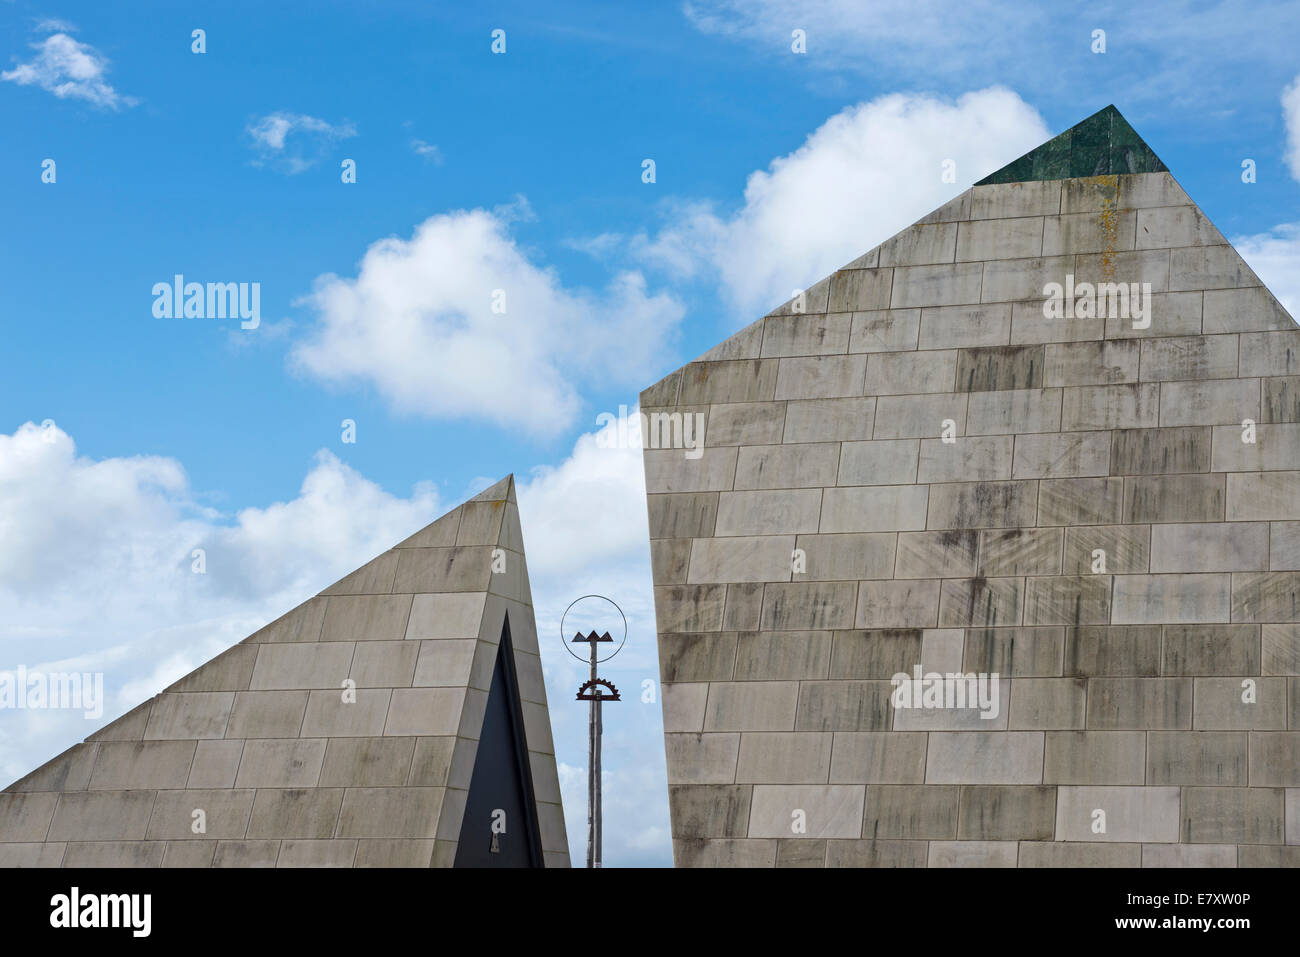 Te Aho a Māui sculpture, split pyramid, Wellington, New Zealand Stock Photo